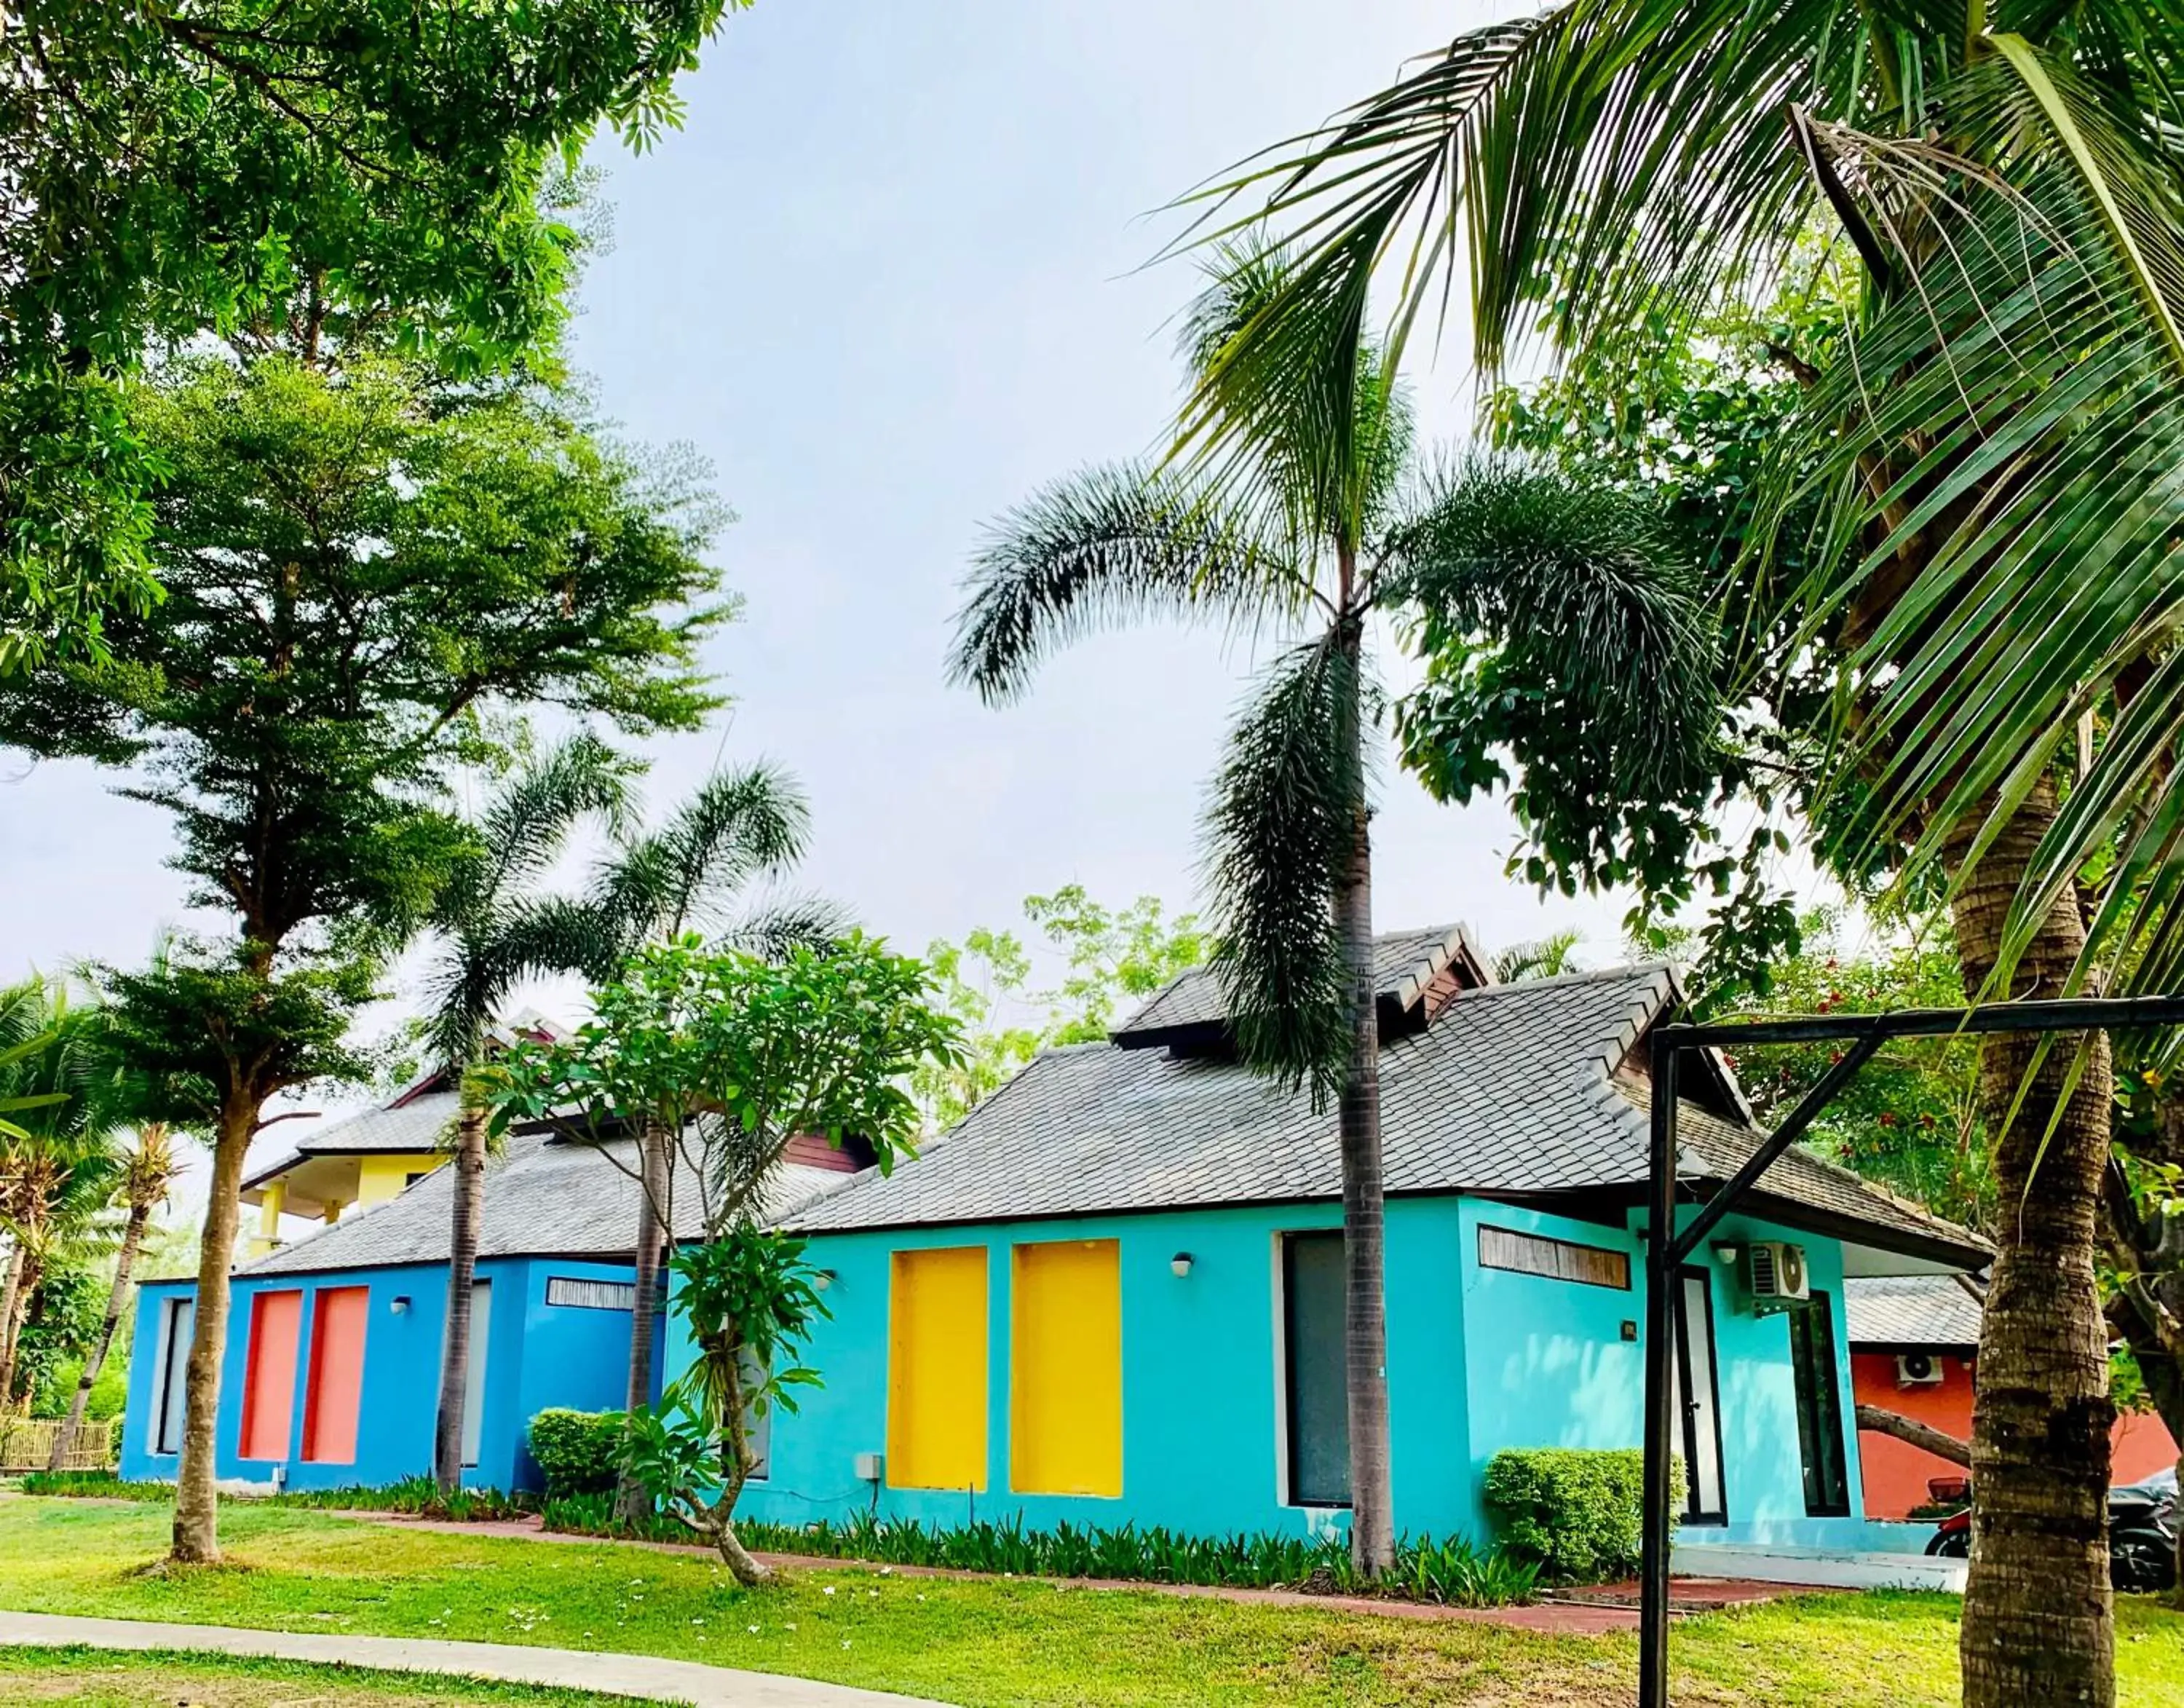 Property building in Bura Lumpai Resort